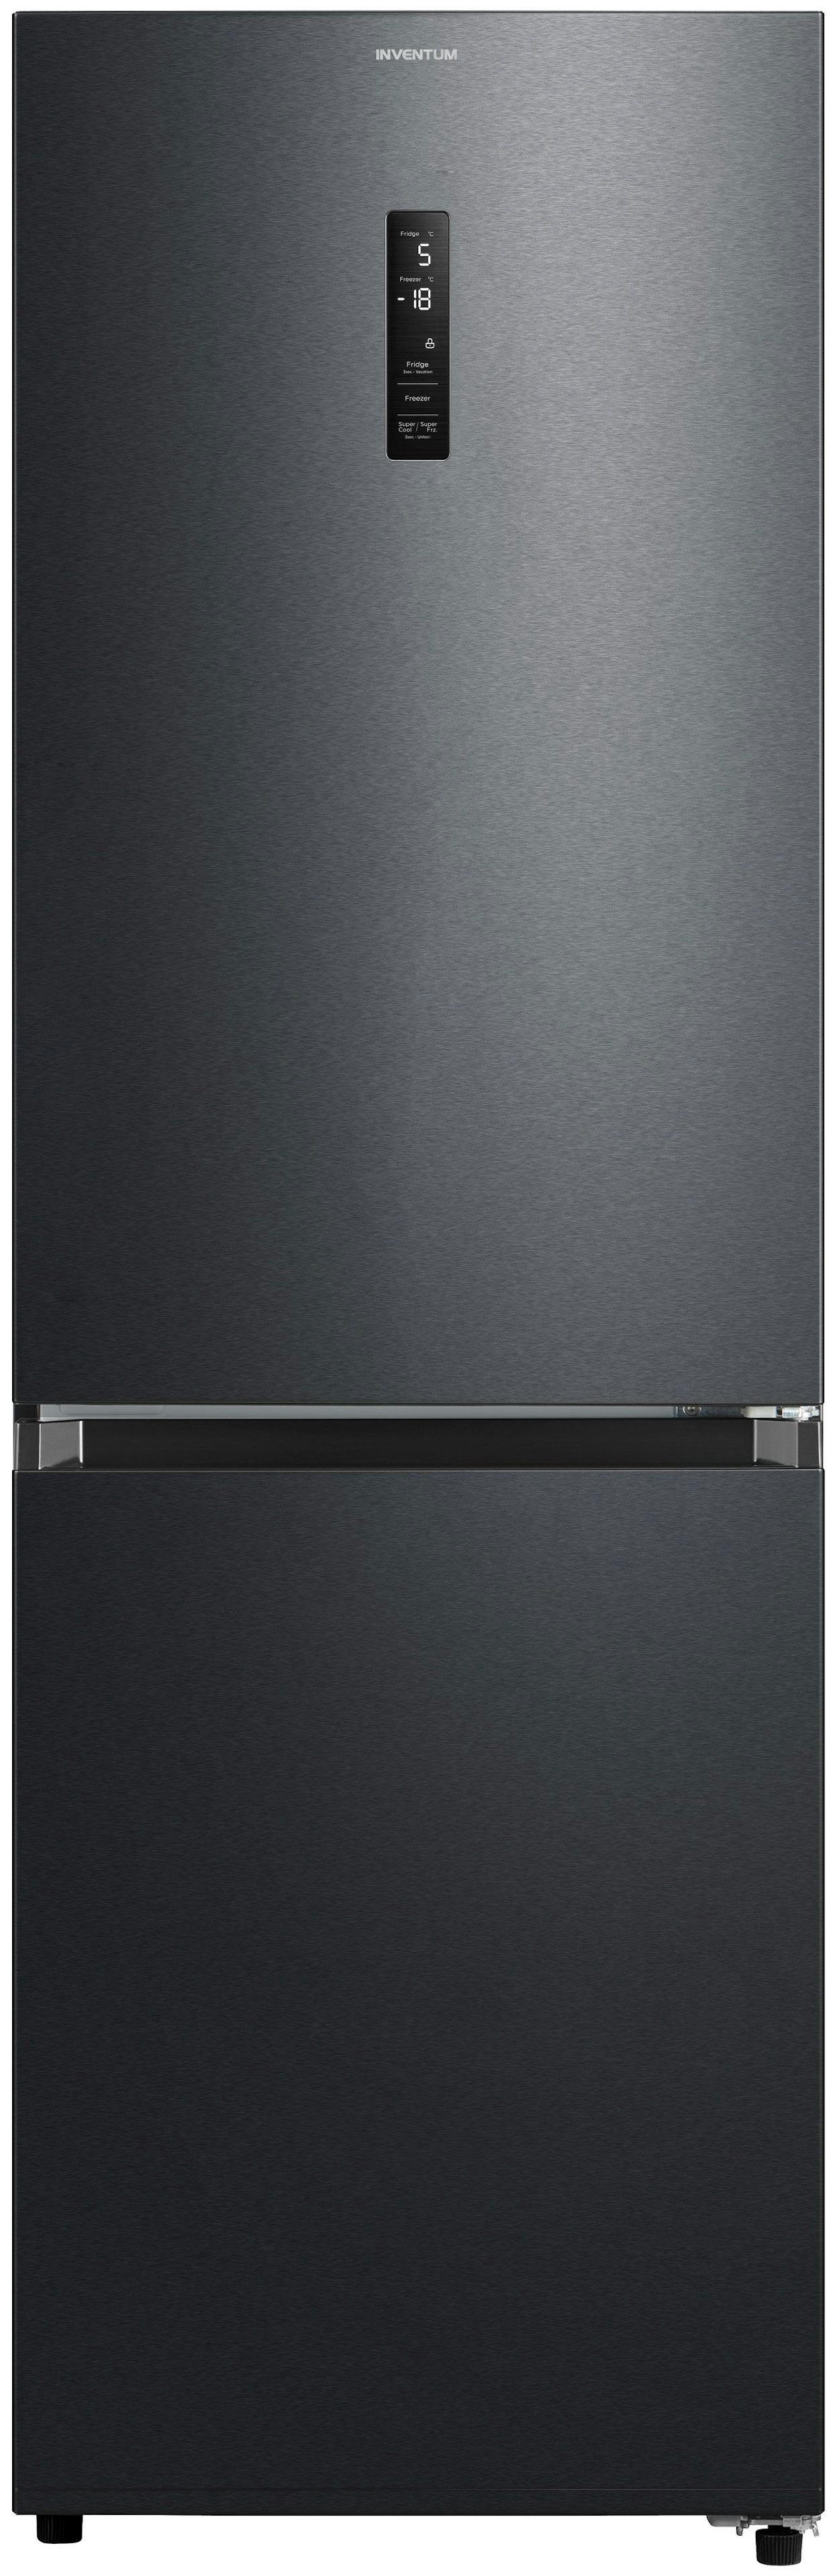 Inventum koelkast KV1850B afbeelding 3